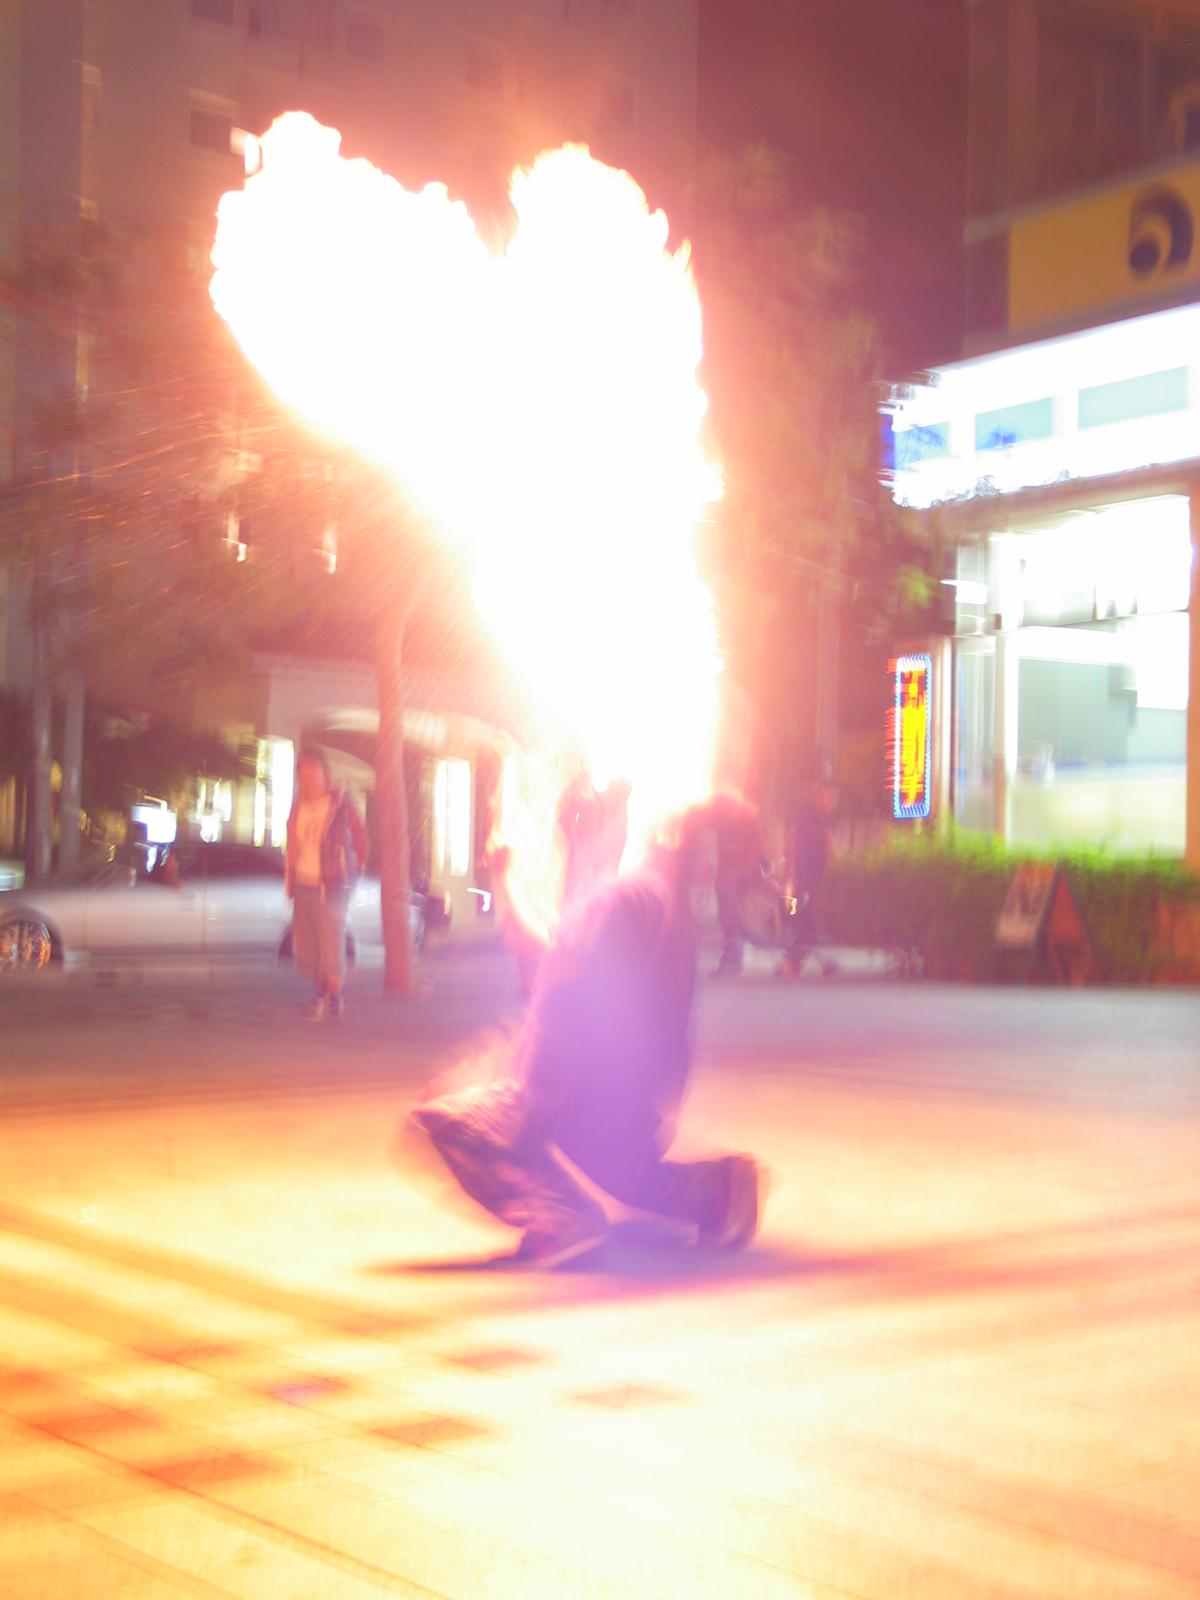 The fire dancer